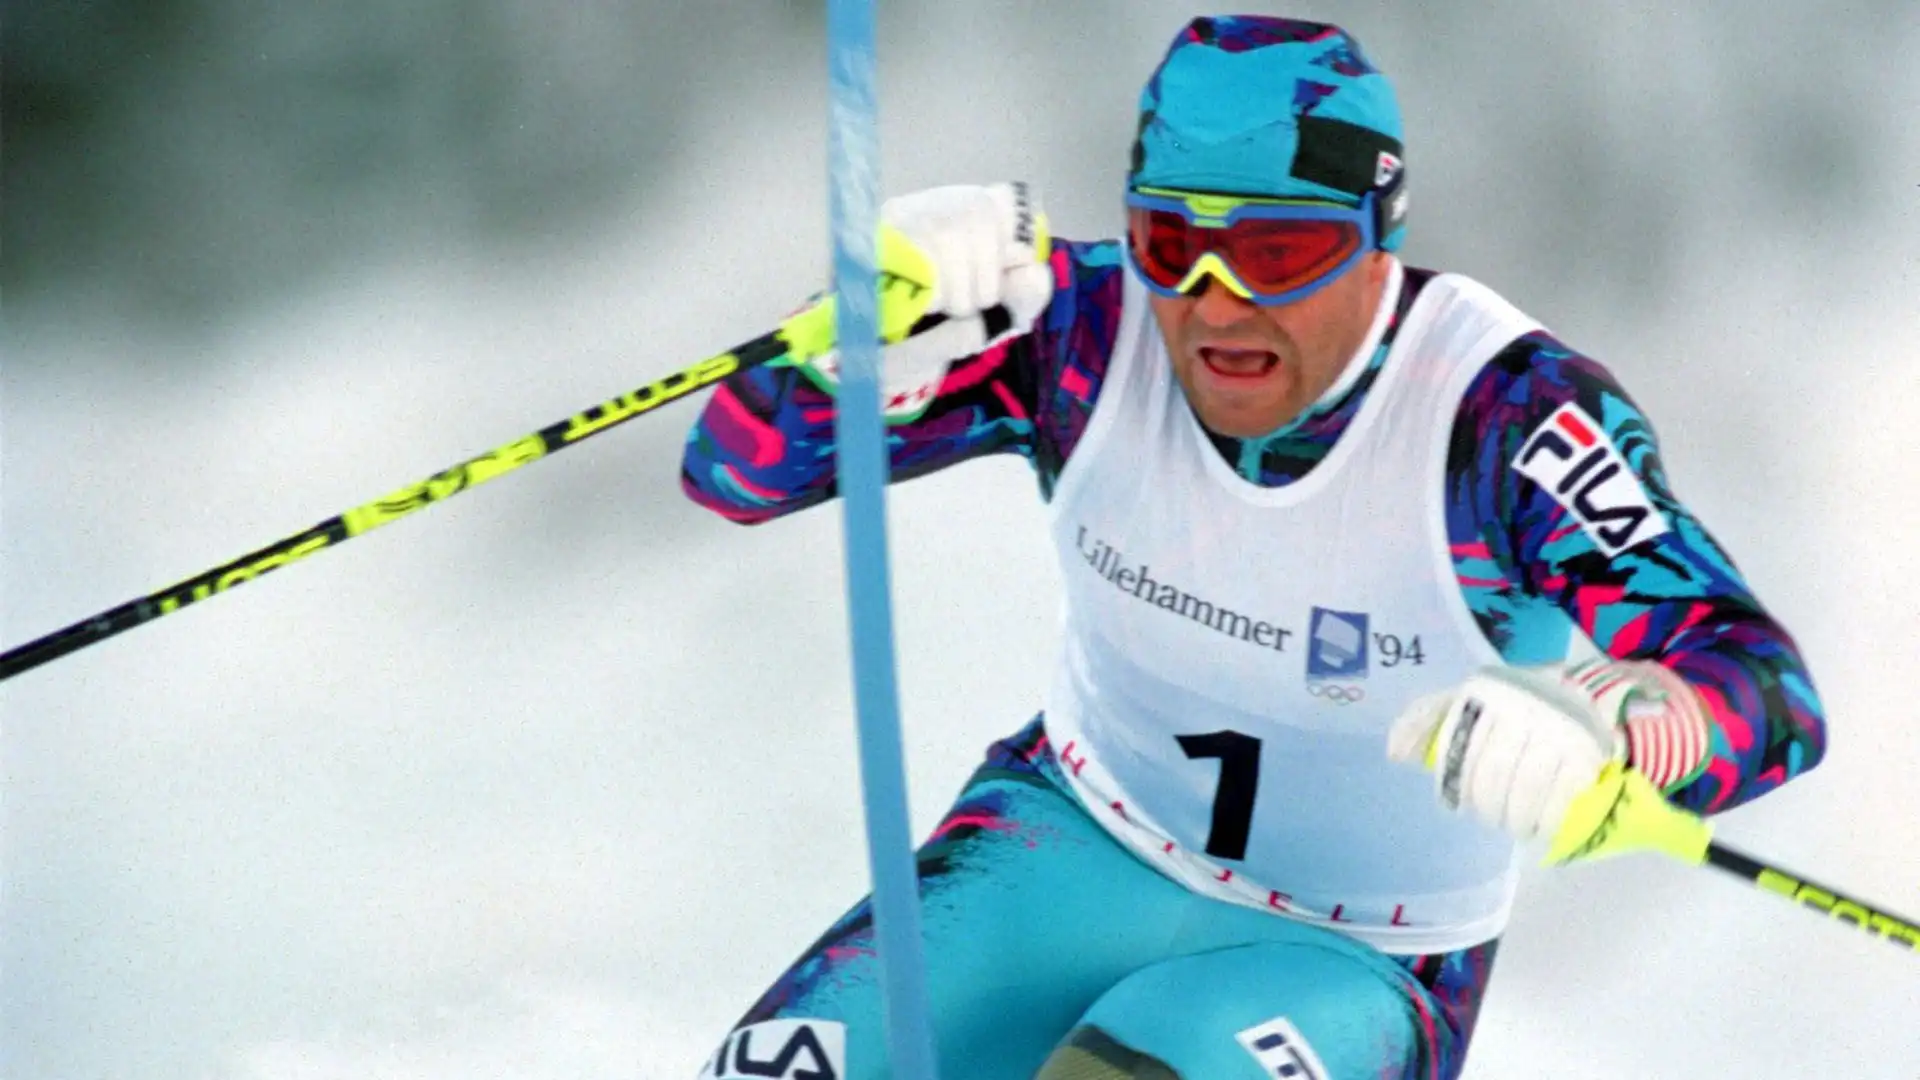 Tomba è stato il primo atleta a vincere due ori nella stessa specialità dello sci alpino per due edizioni consecutive (Calgary 1988 e Albertville 1992)